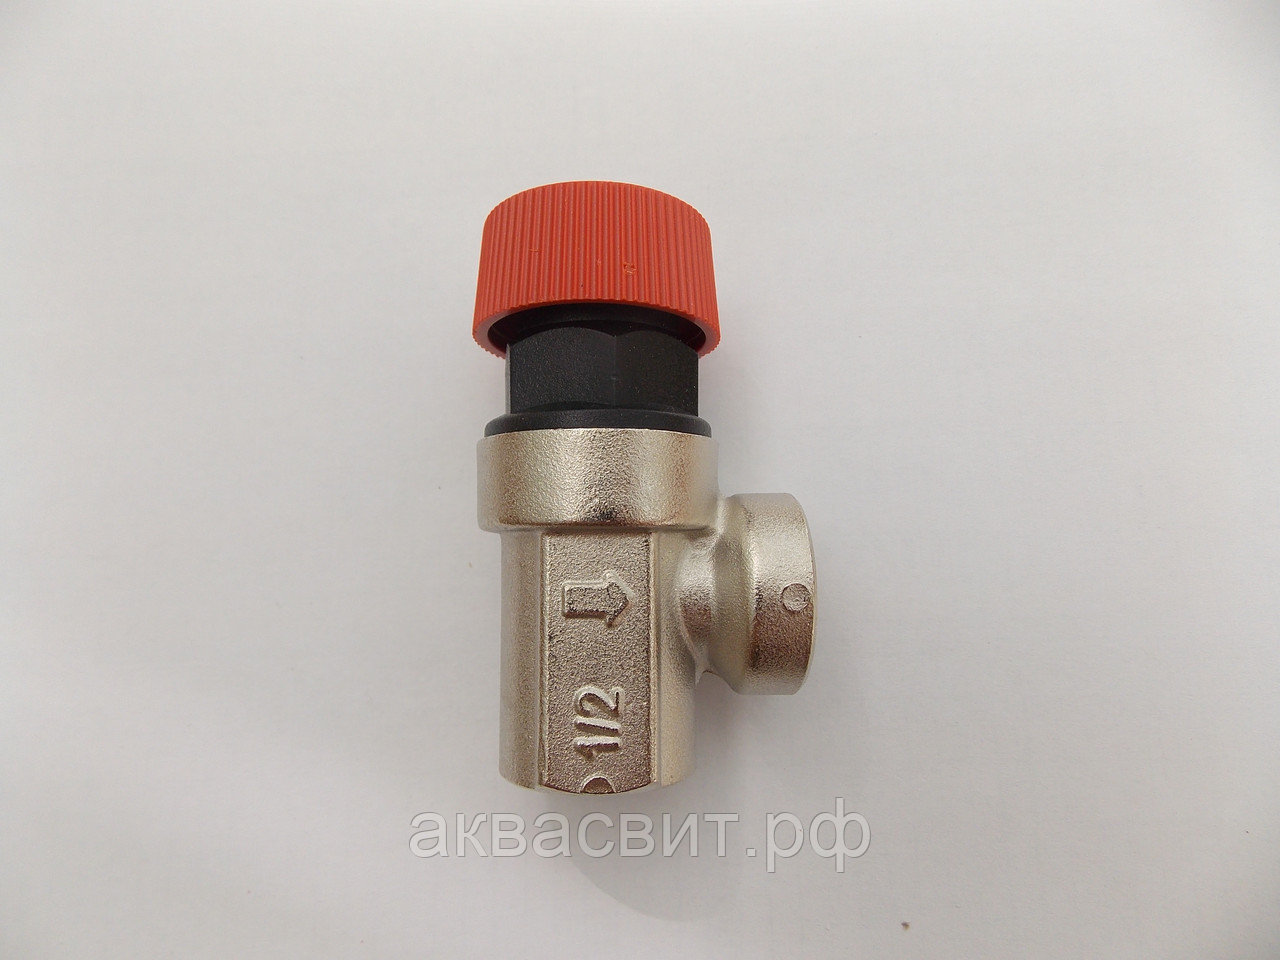 Предохранительный клапан для водонагревателя: обратный вариант для бойлера 1/2, принцип работы, продукт для сброса избыточного давления воды